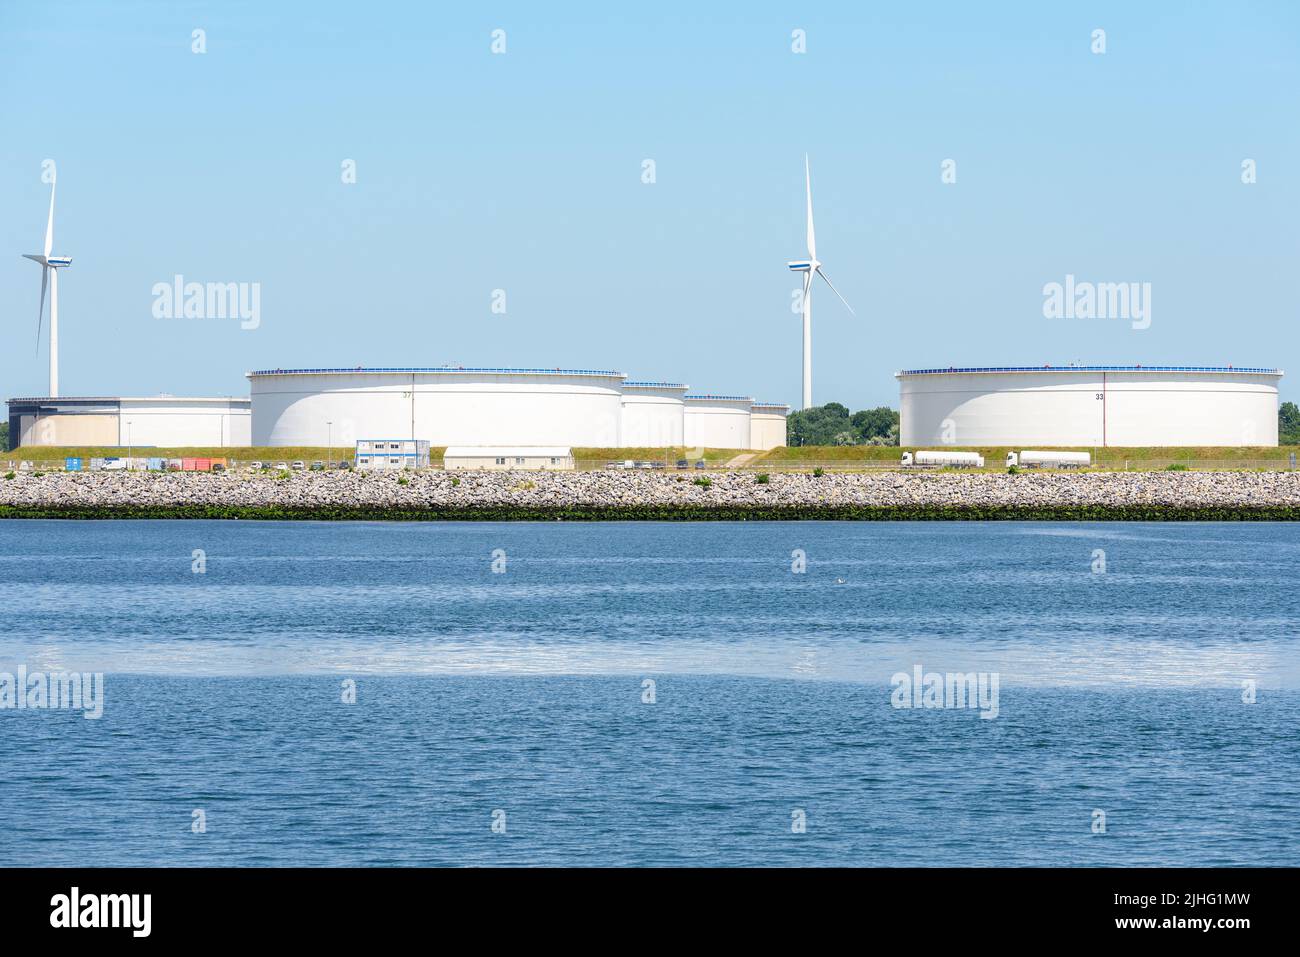 Grandi serbatoi d'olio in un porto in una giornata estiva soleggiata. Le turbine eoliche sono sullo sfondo. Foto Stock